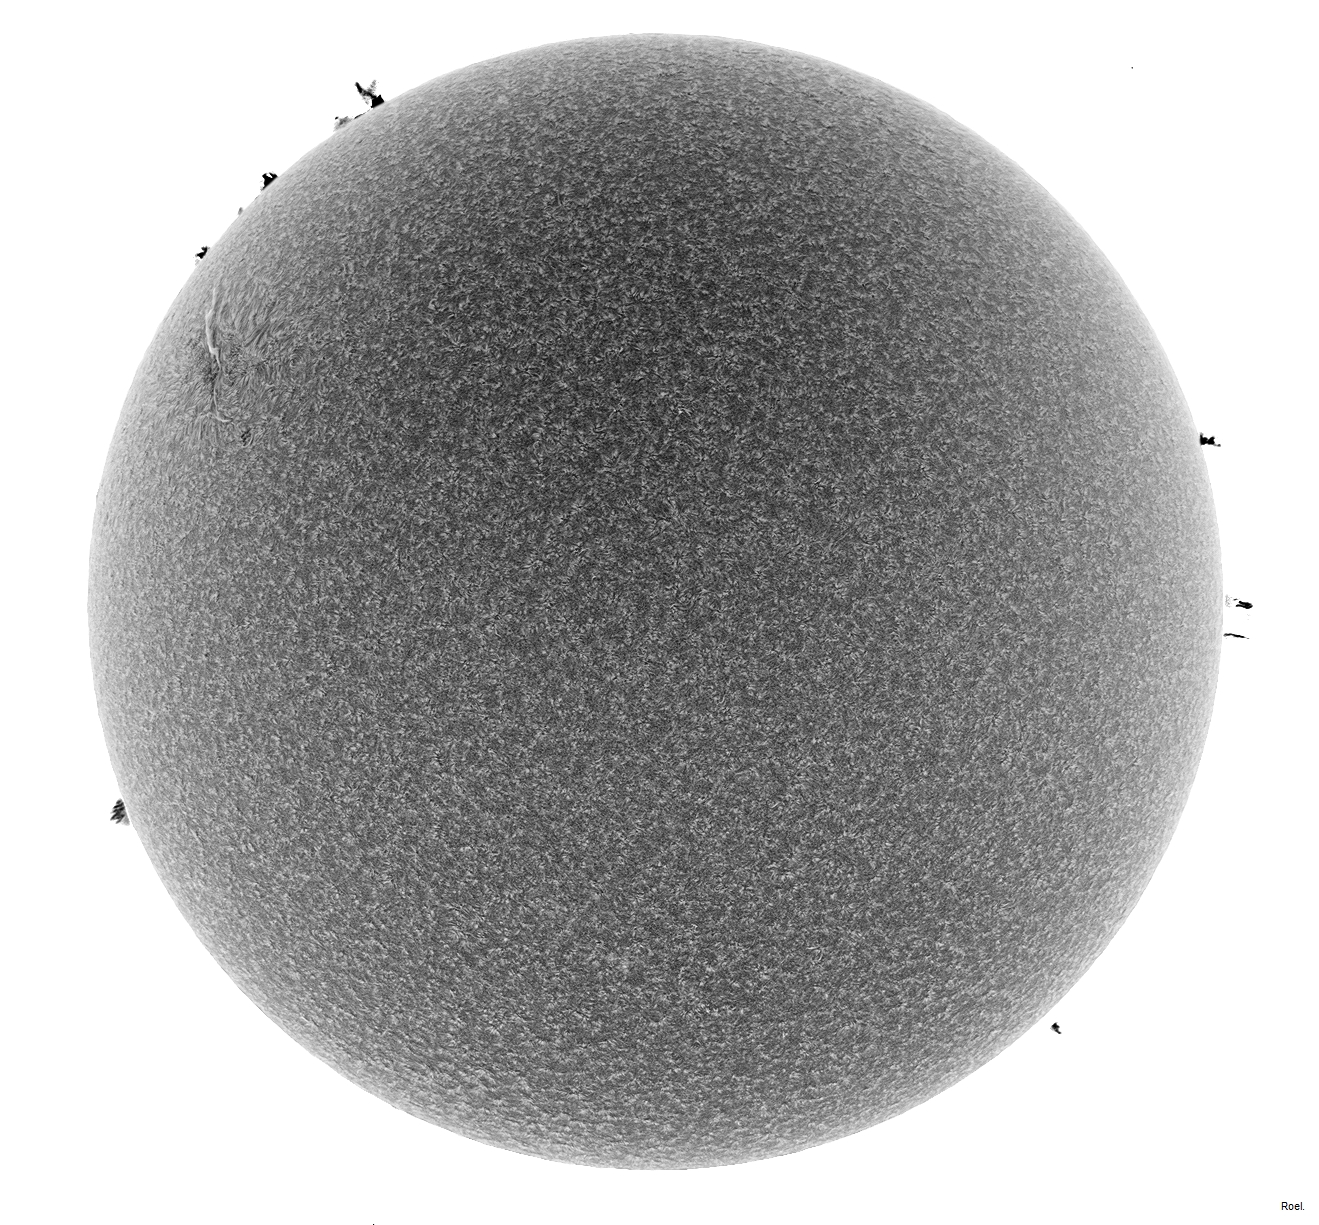 Sol del 15 de febrero del 2019-Solarmax 90-DS-BF30-2neg.jpg